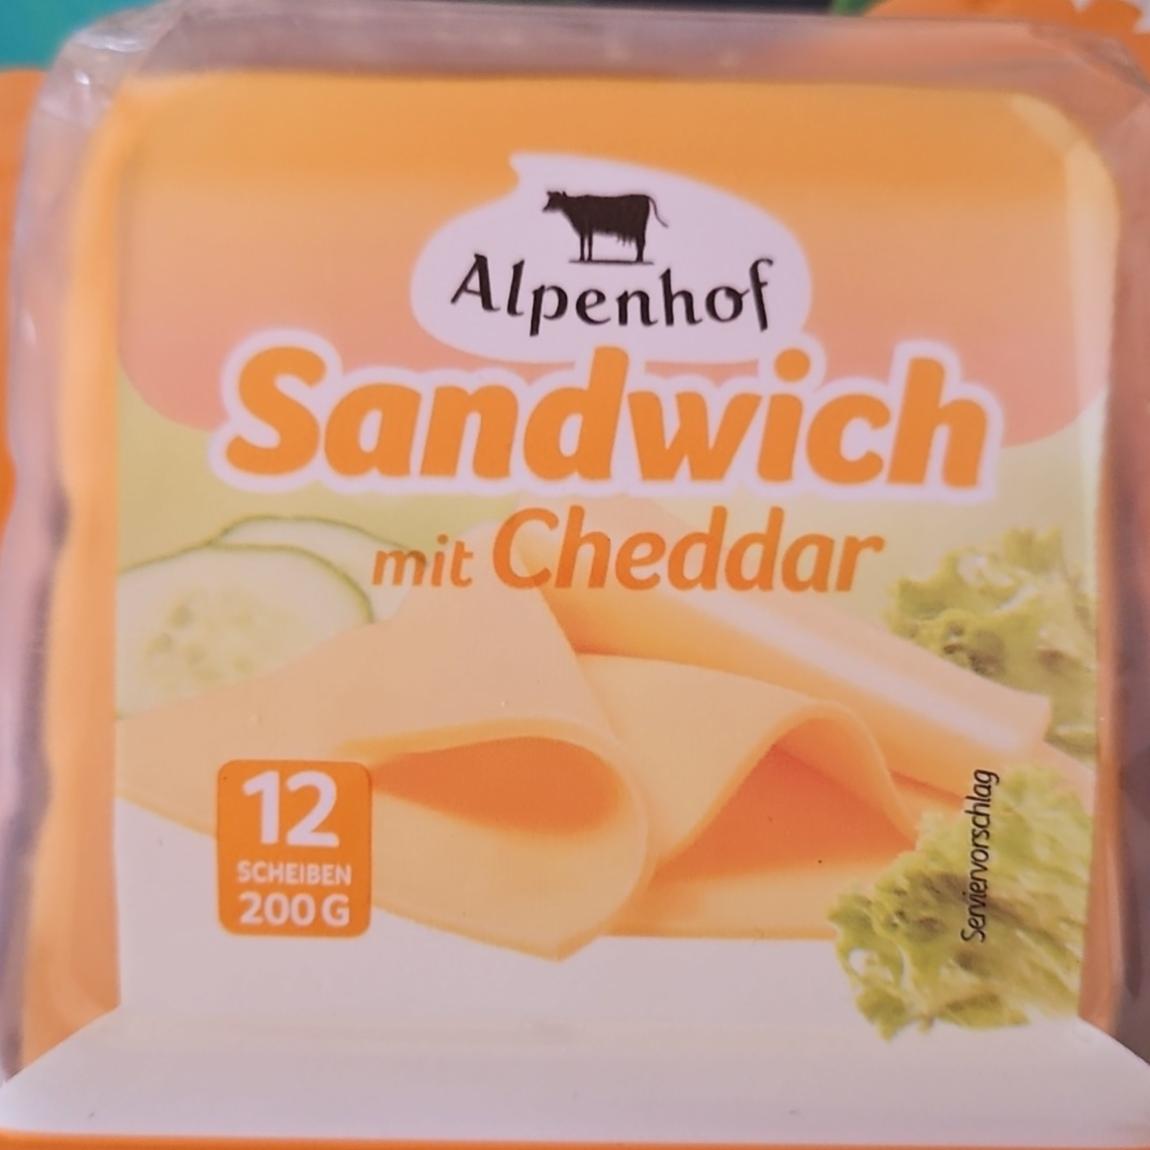 Zdjęcia - Sandwich mit Cheddar Alpenhof